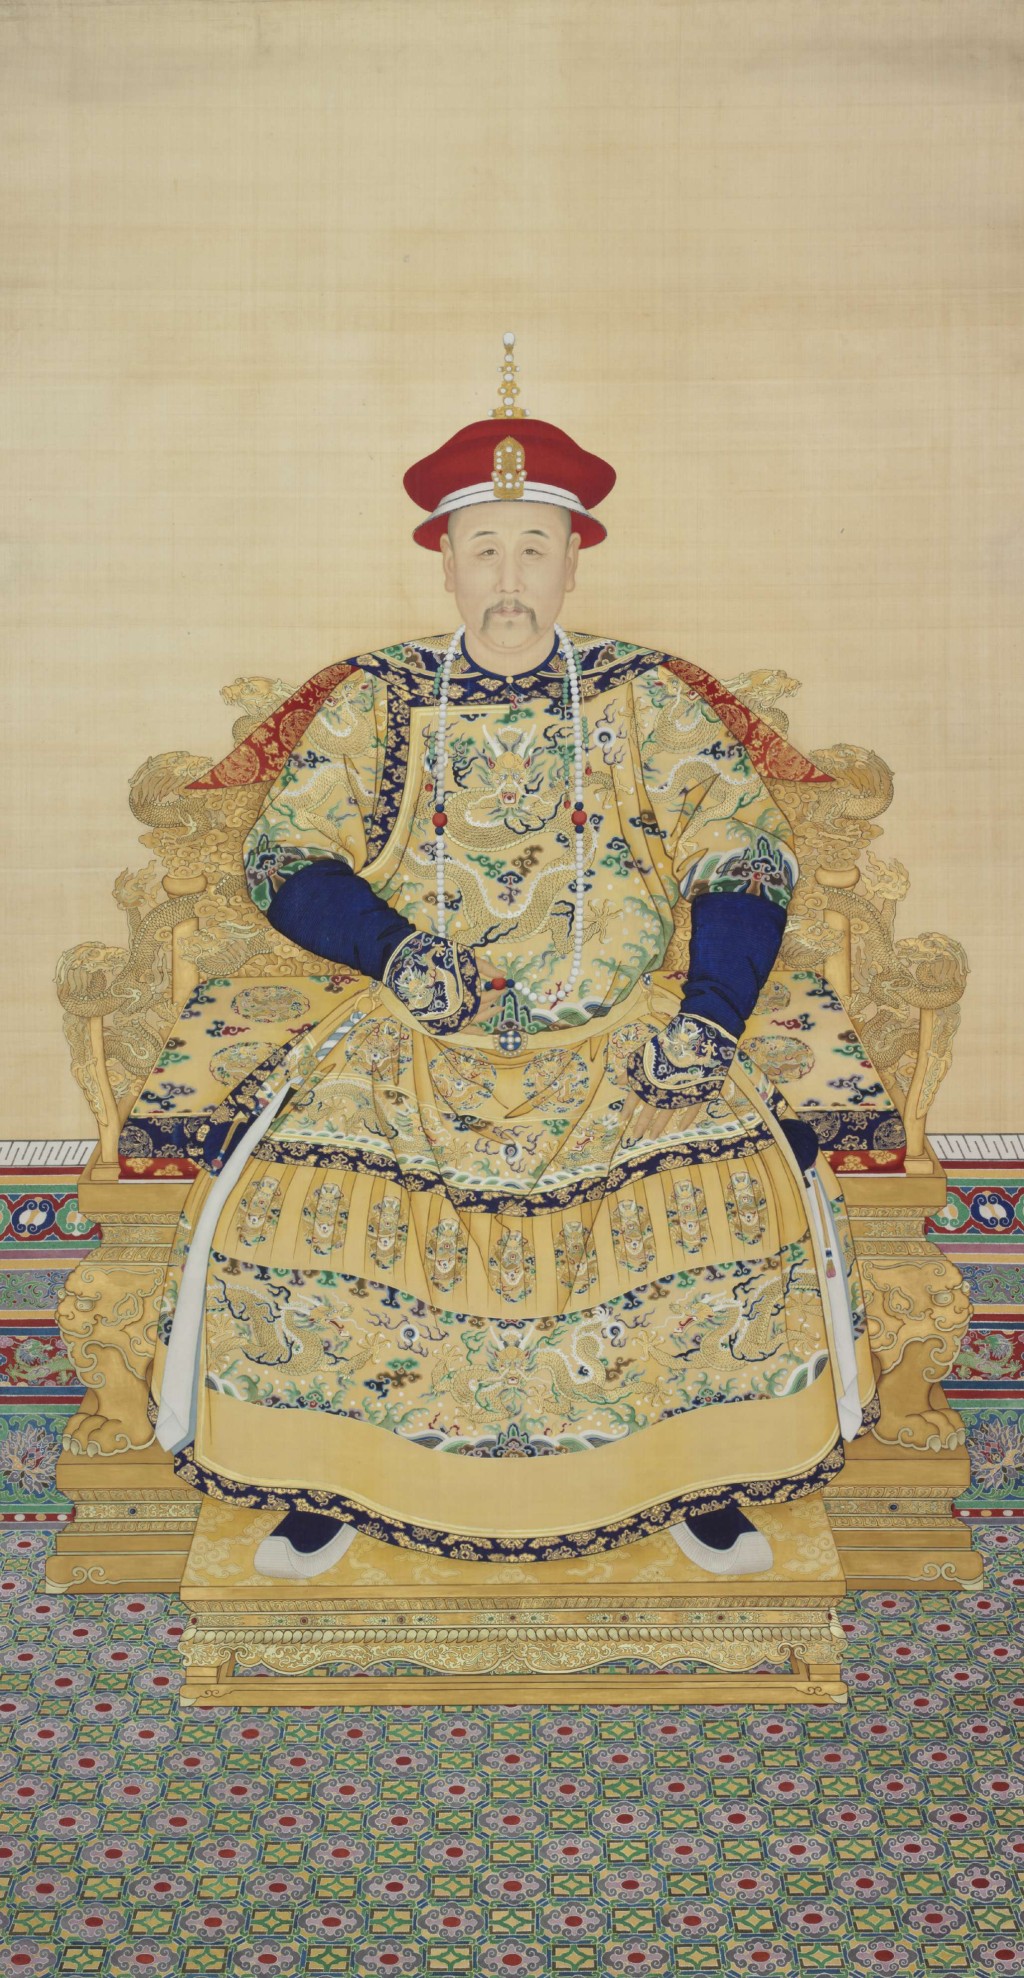 參觀香港故宮文化博物館（展廳四），展品之一，世宗憲皇帝(雍正)朝服像，清乾隆十五年(1750–1751)或之前，絹本設色立軸